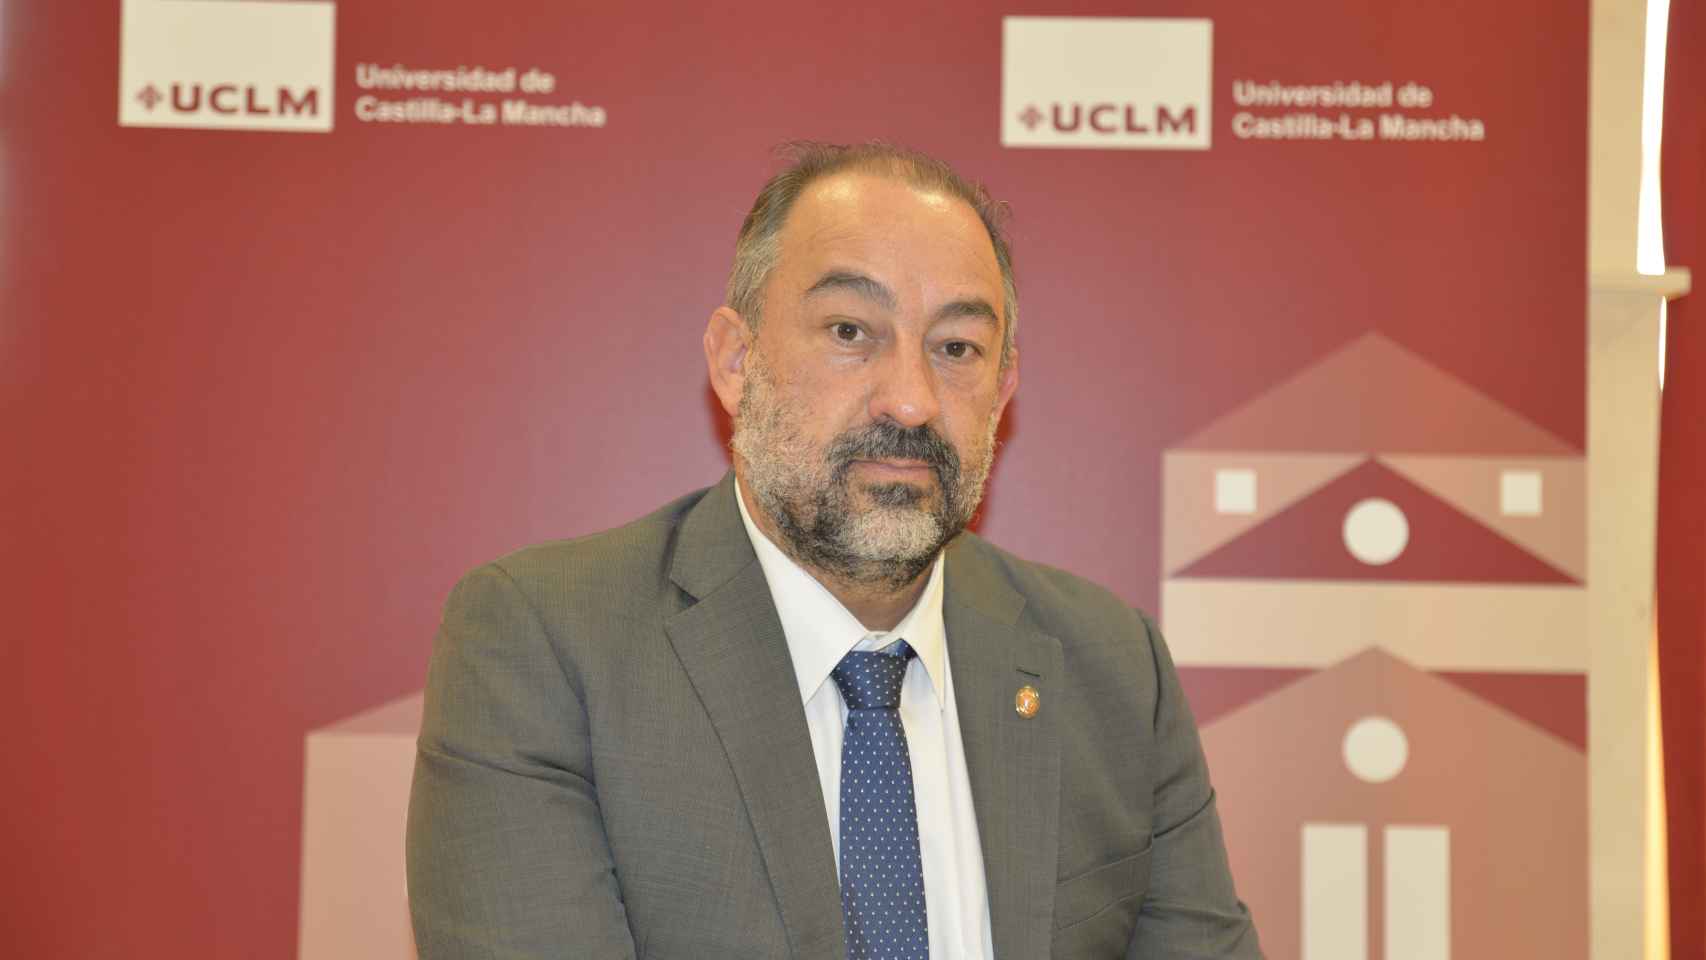 Julián Garde, rector de la UCLM